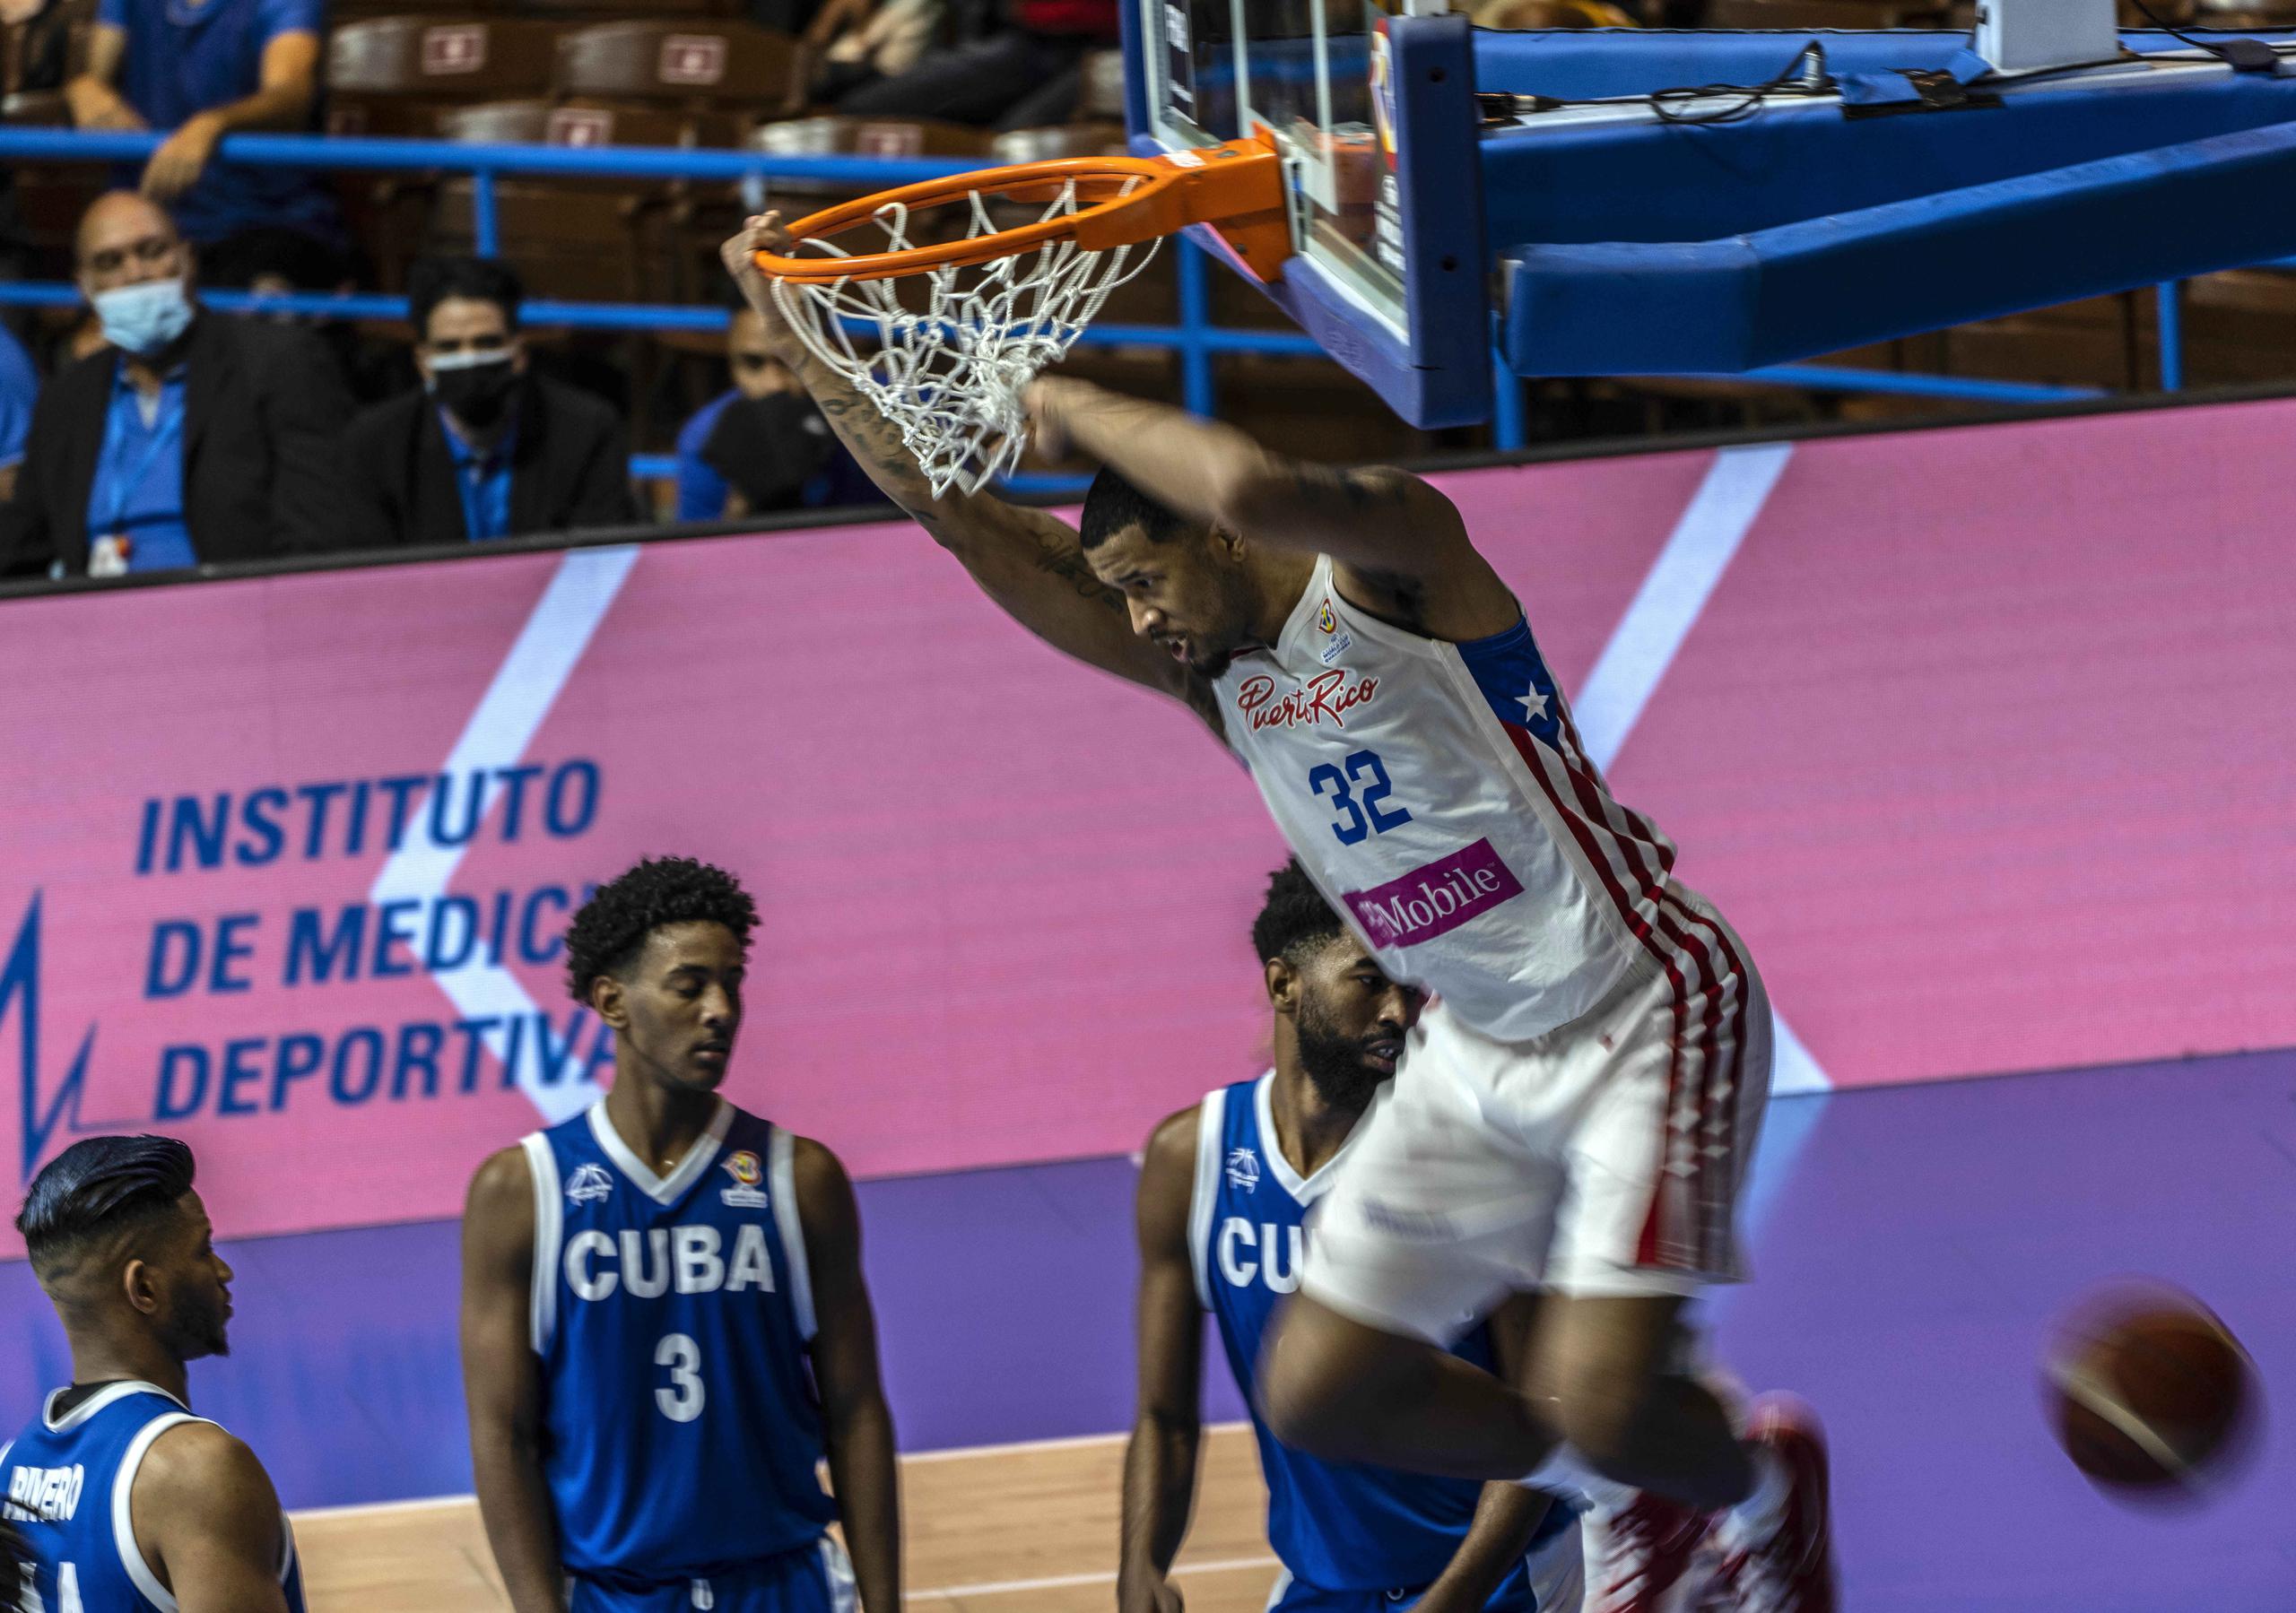 Chris Ortiz donquea el balón por una asistencia de Jezreel de Jesús el domingo ante Cuba y fue una de las bujías para que los boricuas lograran la clasificación a la segunda etapa de ventanas del clasificatorio de la FIBA a la Copa del Mundo 2023.